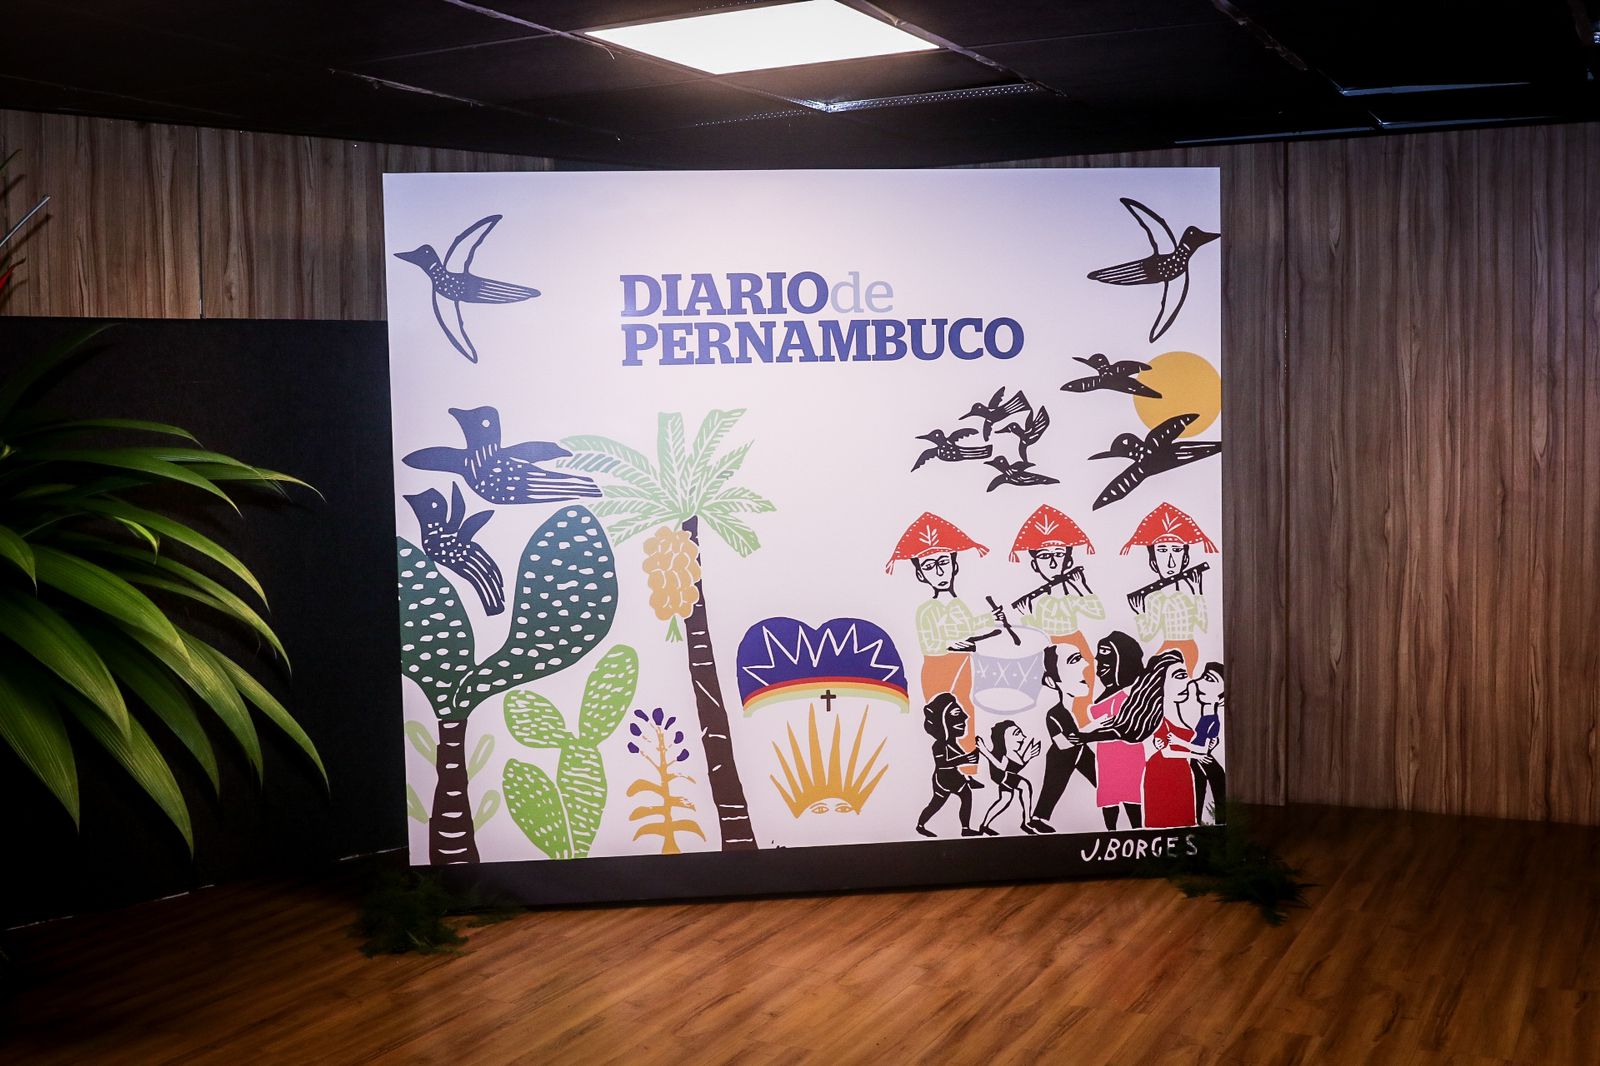  Diario de Pernambuco celebra as Marcas Preferidas de Pernambuco em evento exclusivo